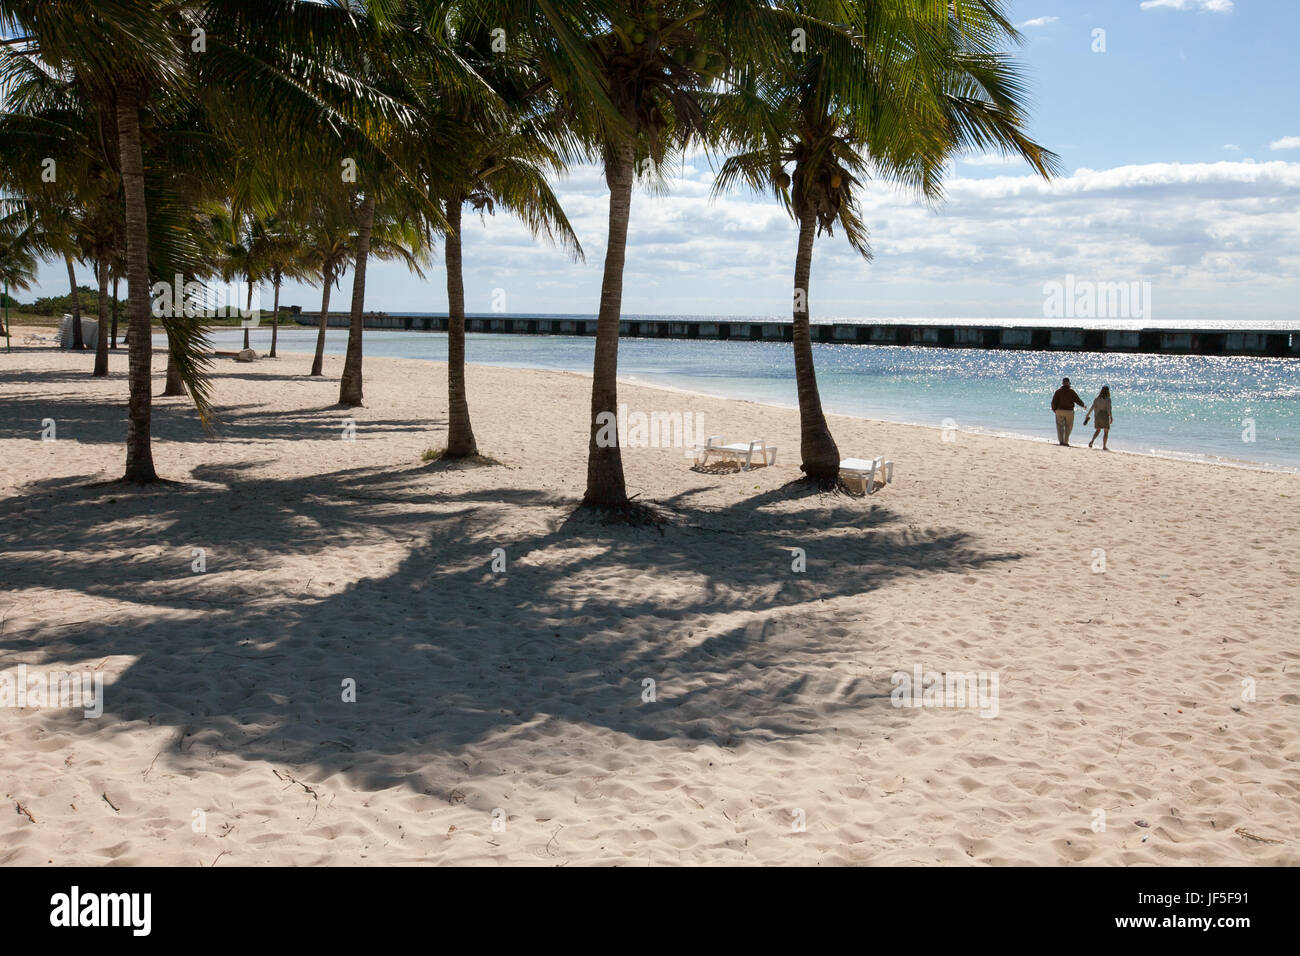 Près de chaises de plage et de palmiers, un couple se dirige vers l'océan de l'eau. Banque D'Images